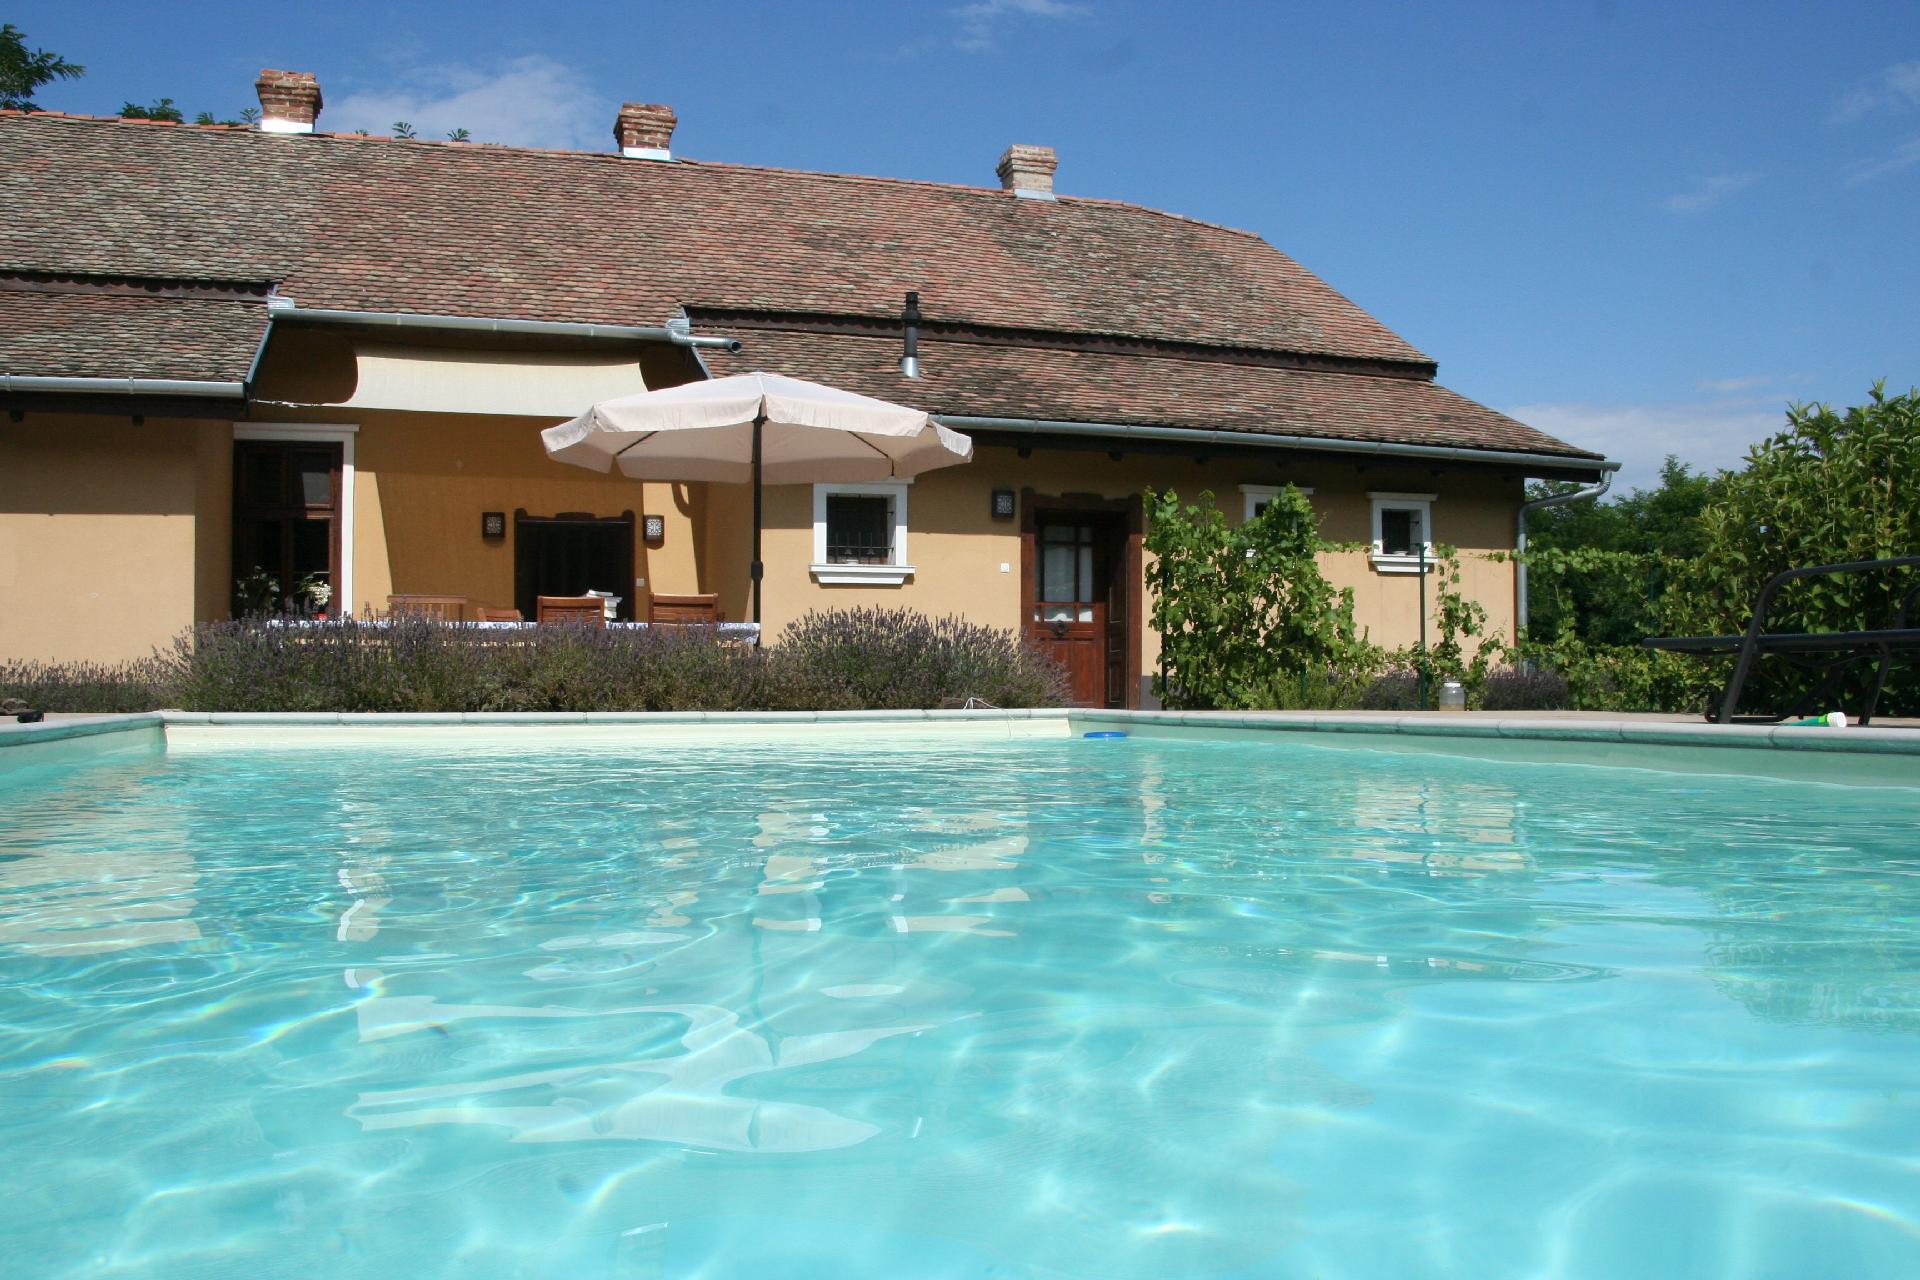 Ferienhaus mit Privatpool für 4 Personen  + 4 Ferienhaus in Ungarn